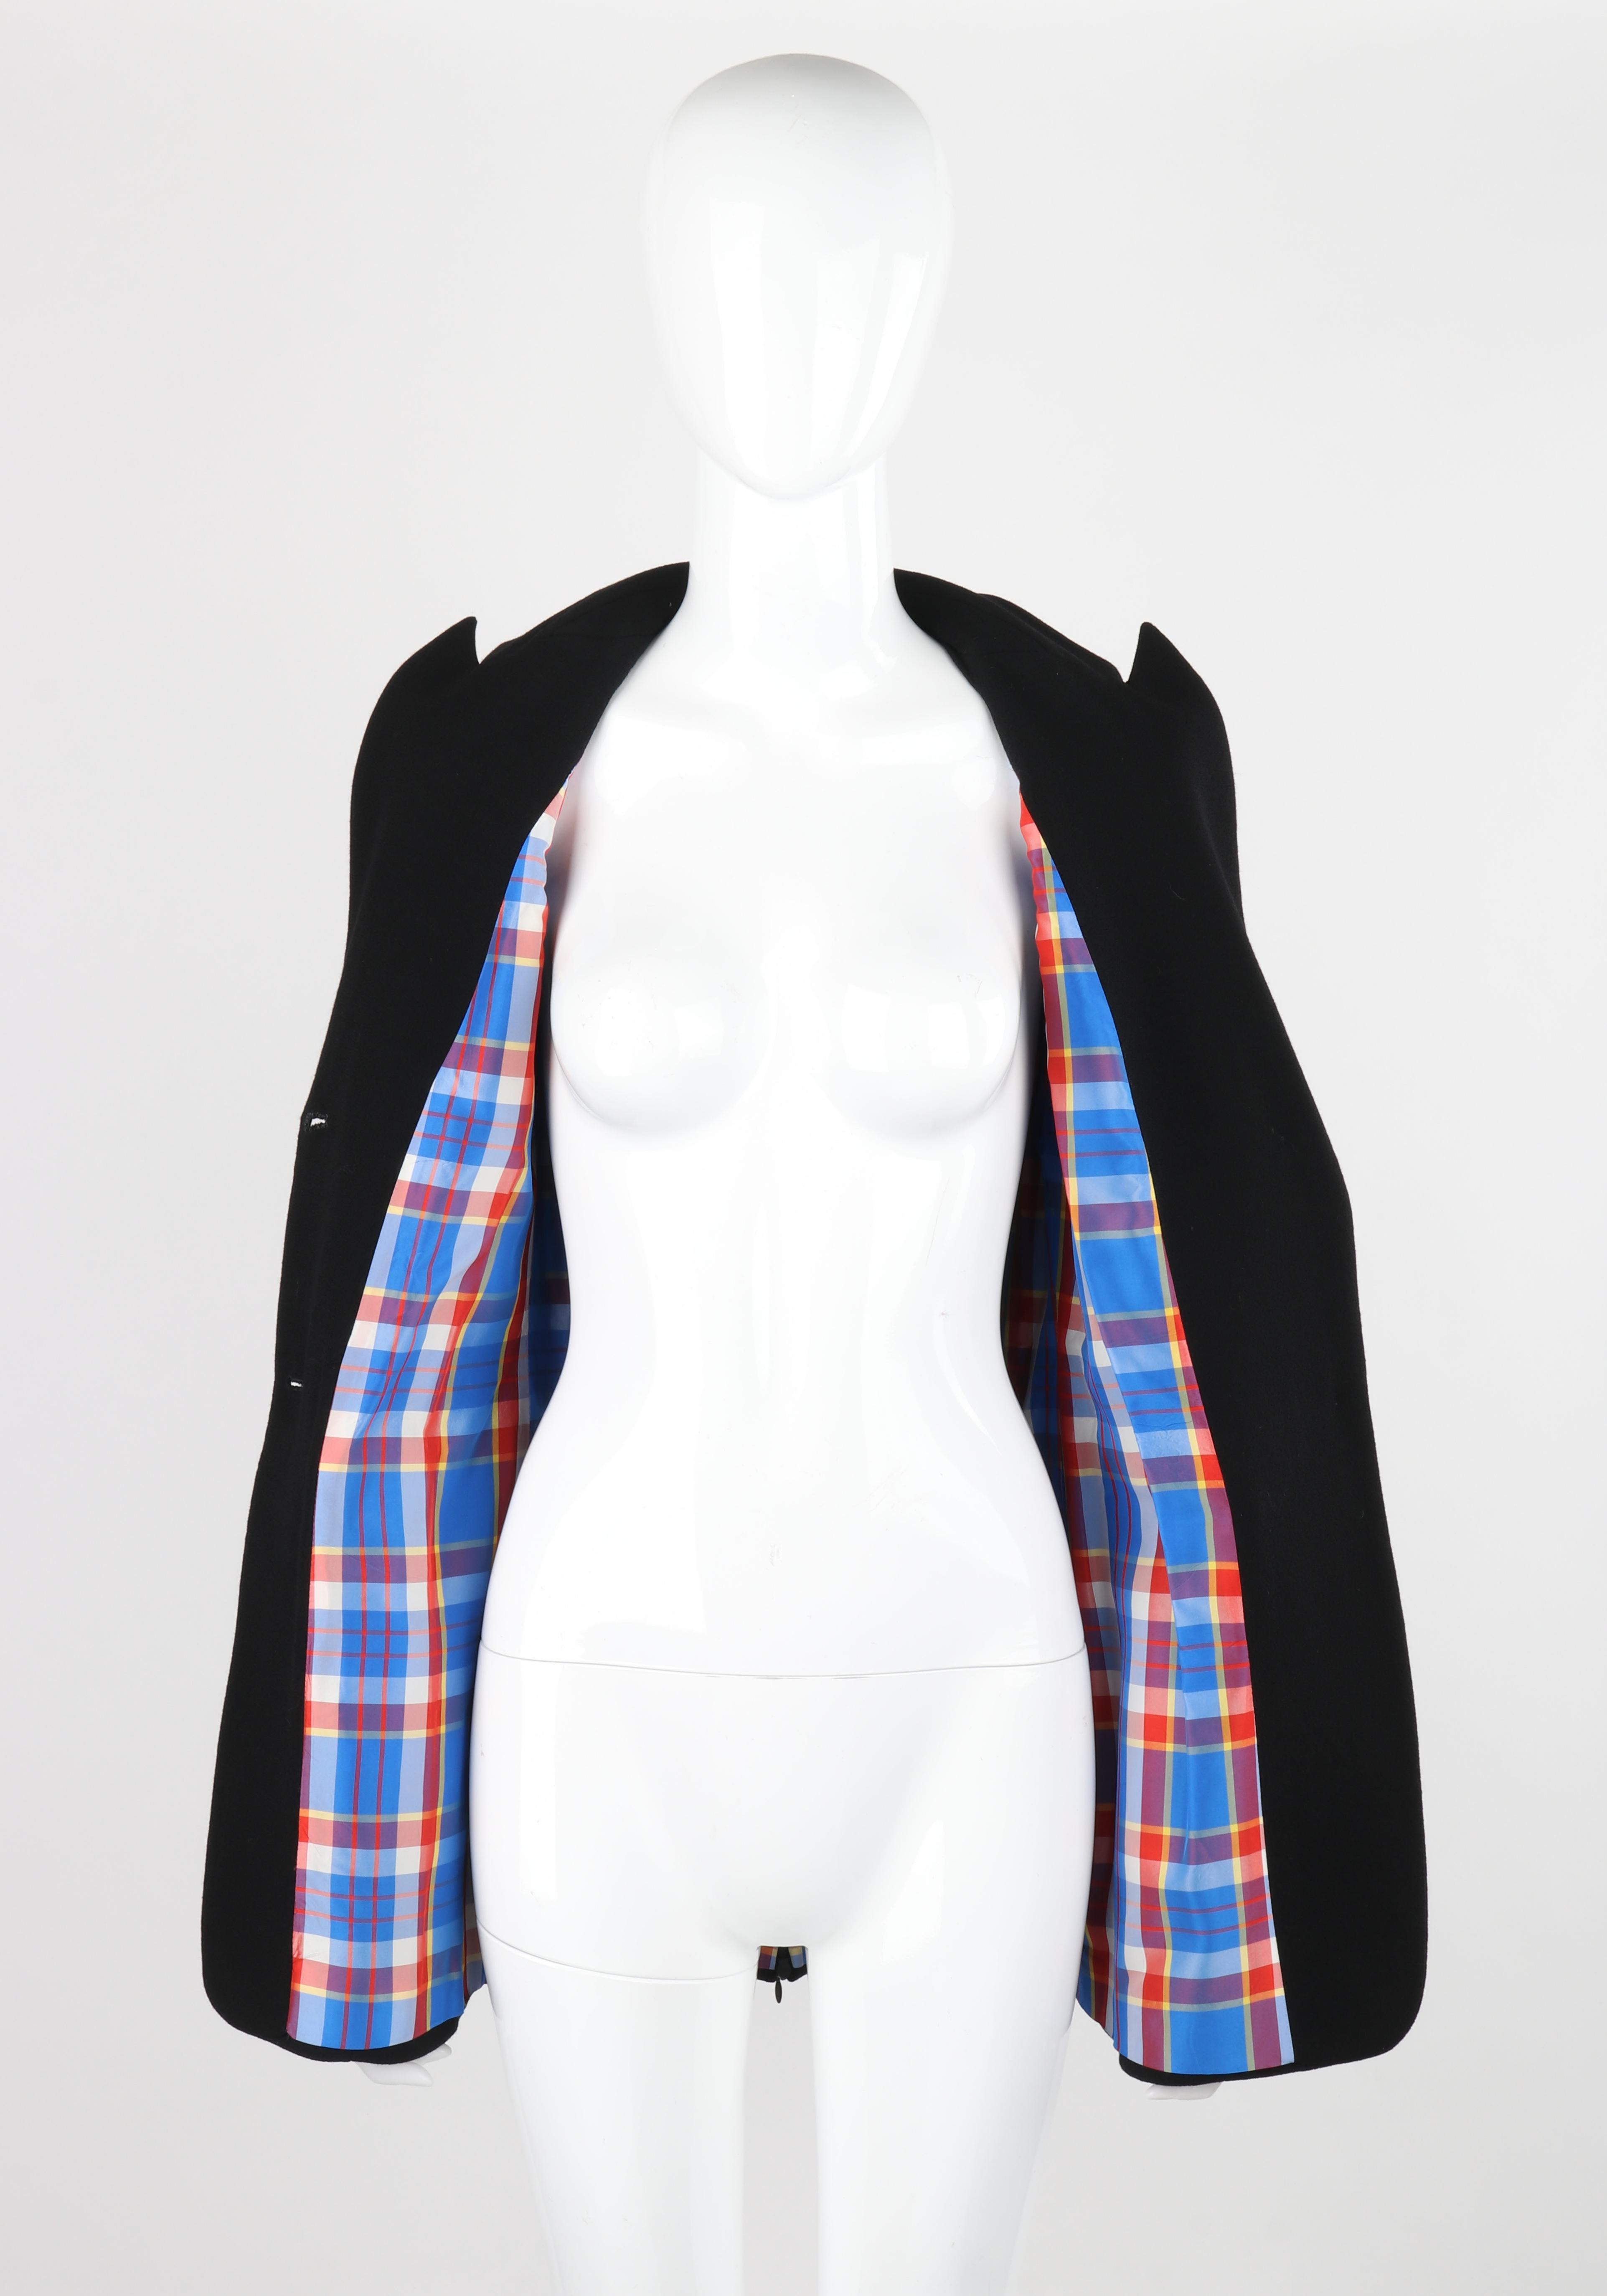 OWEN GASTER c.1990's Vtg Black Wool Structured Zip Open Back Blazer Jacket RARE For Sale 5